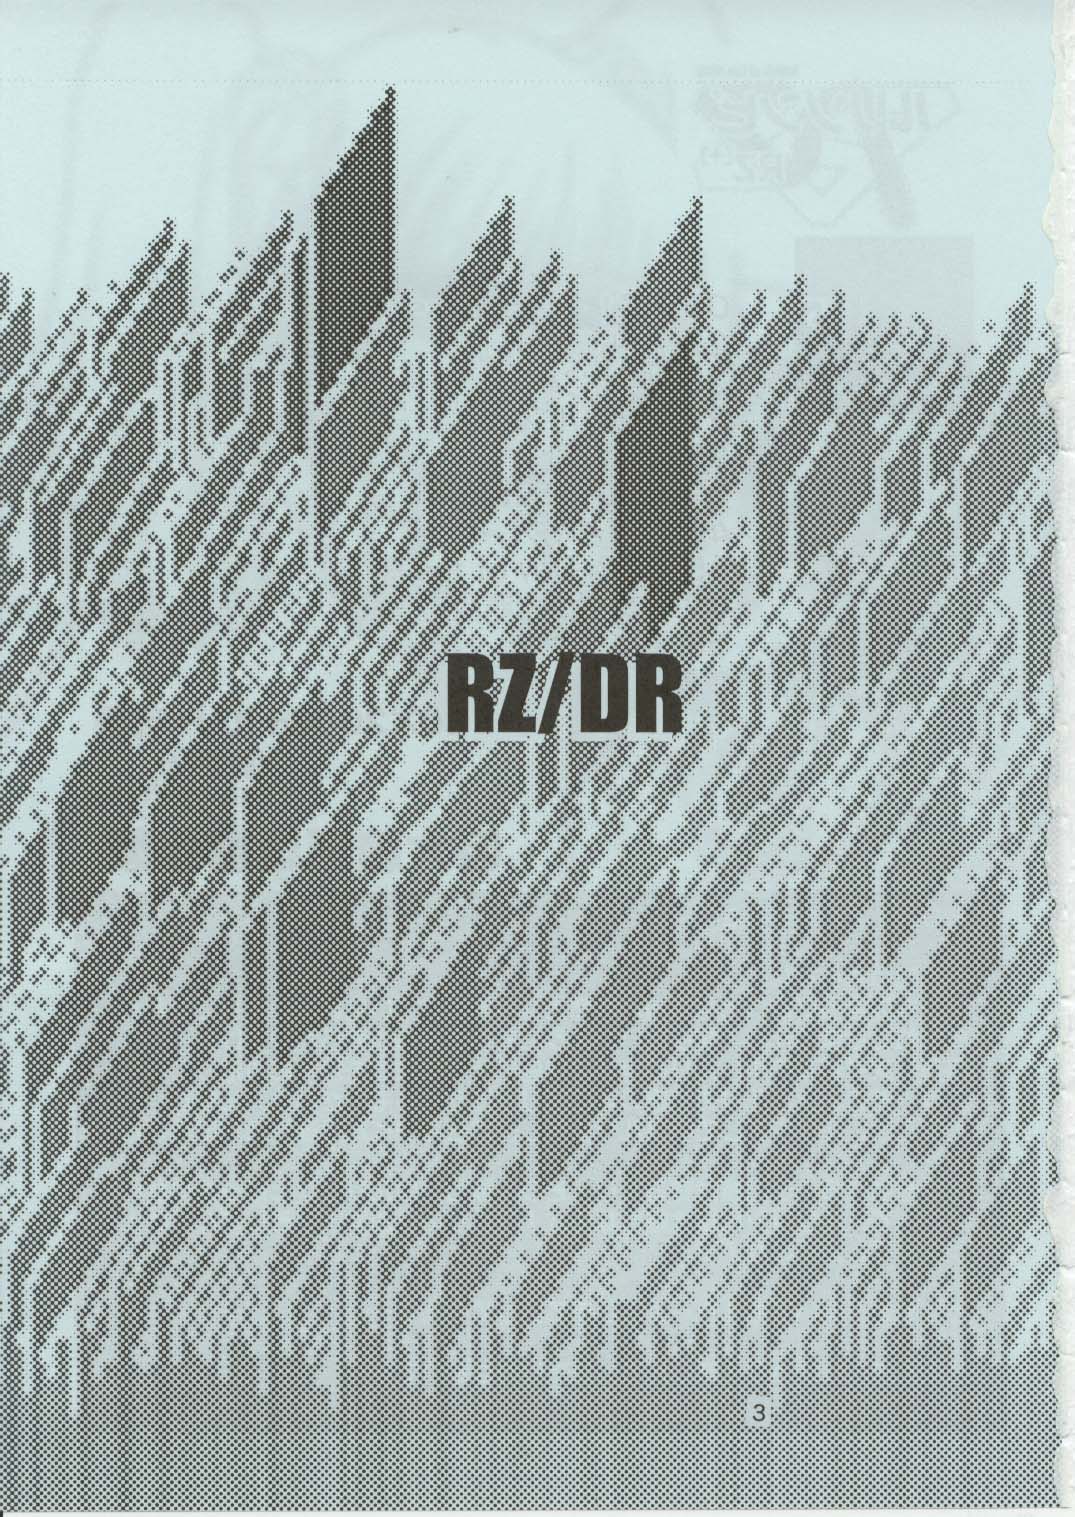 (C62) [巨大軌道要塞強襲 (神尾 96, ラヂヲヘッド)] ルリゾンビ RZ/DR (機動戦艦ナデシコ)